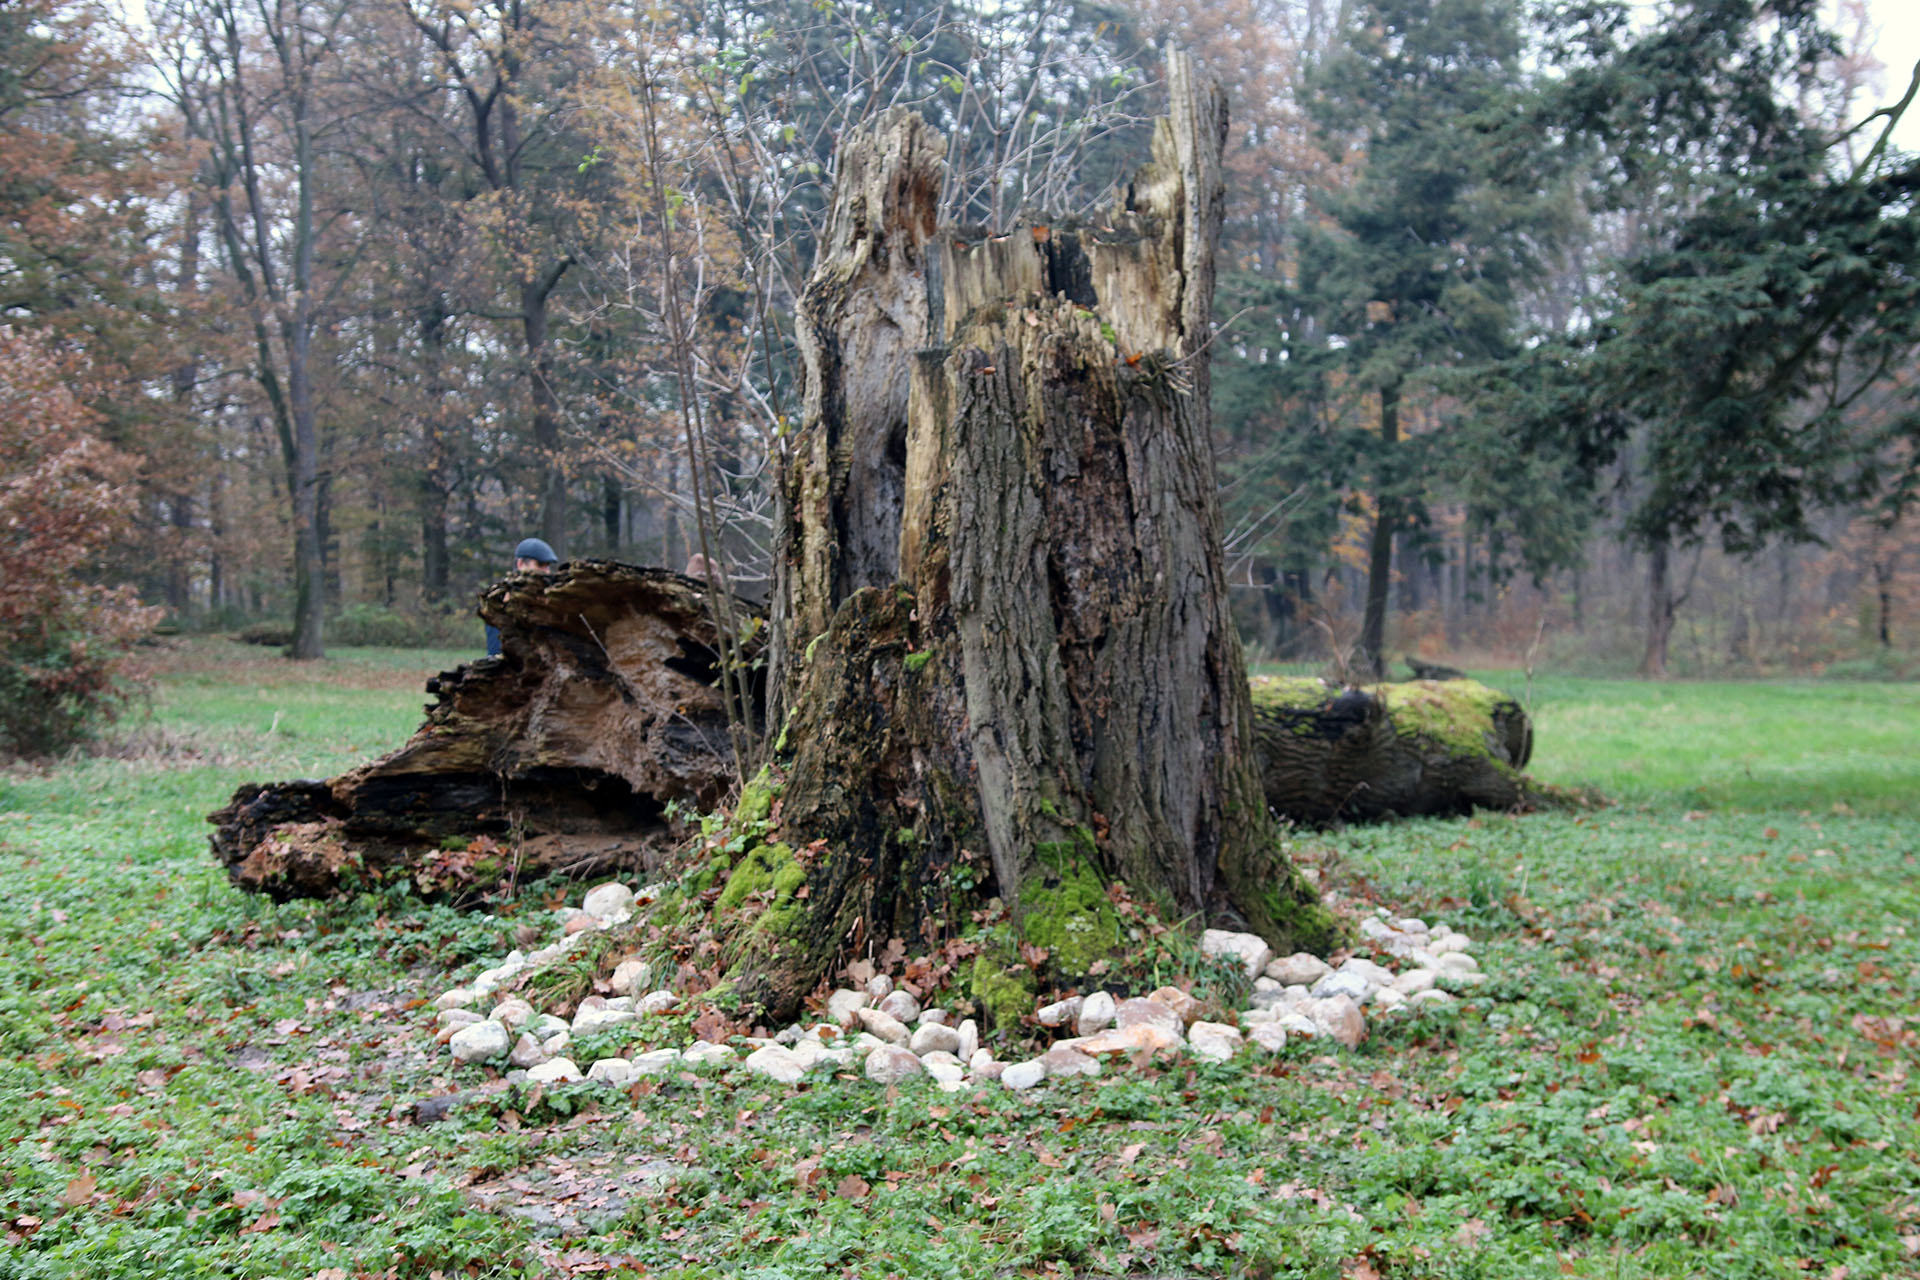 Zdjęcie przedstawia ogromny, spróchniały pień drzewa w lesie, który został obłożony białymi kamieniami